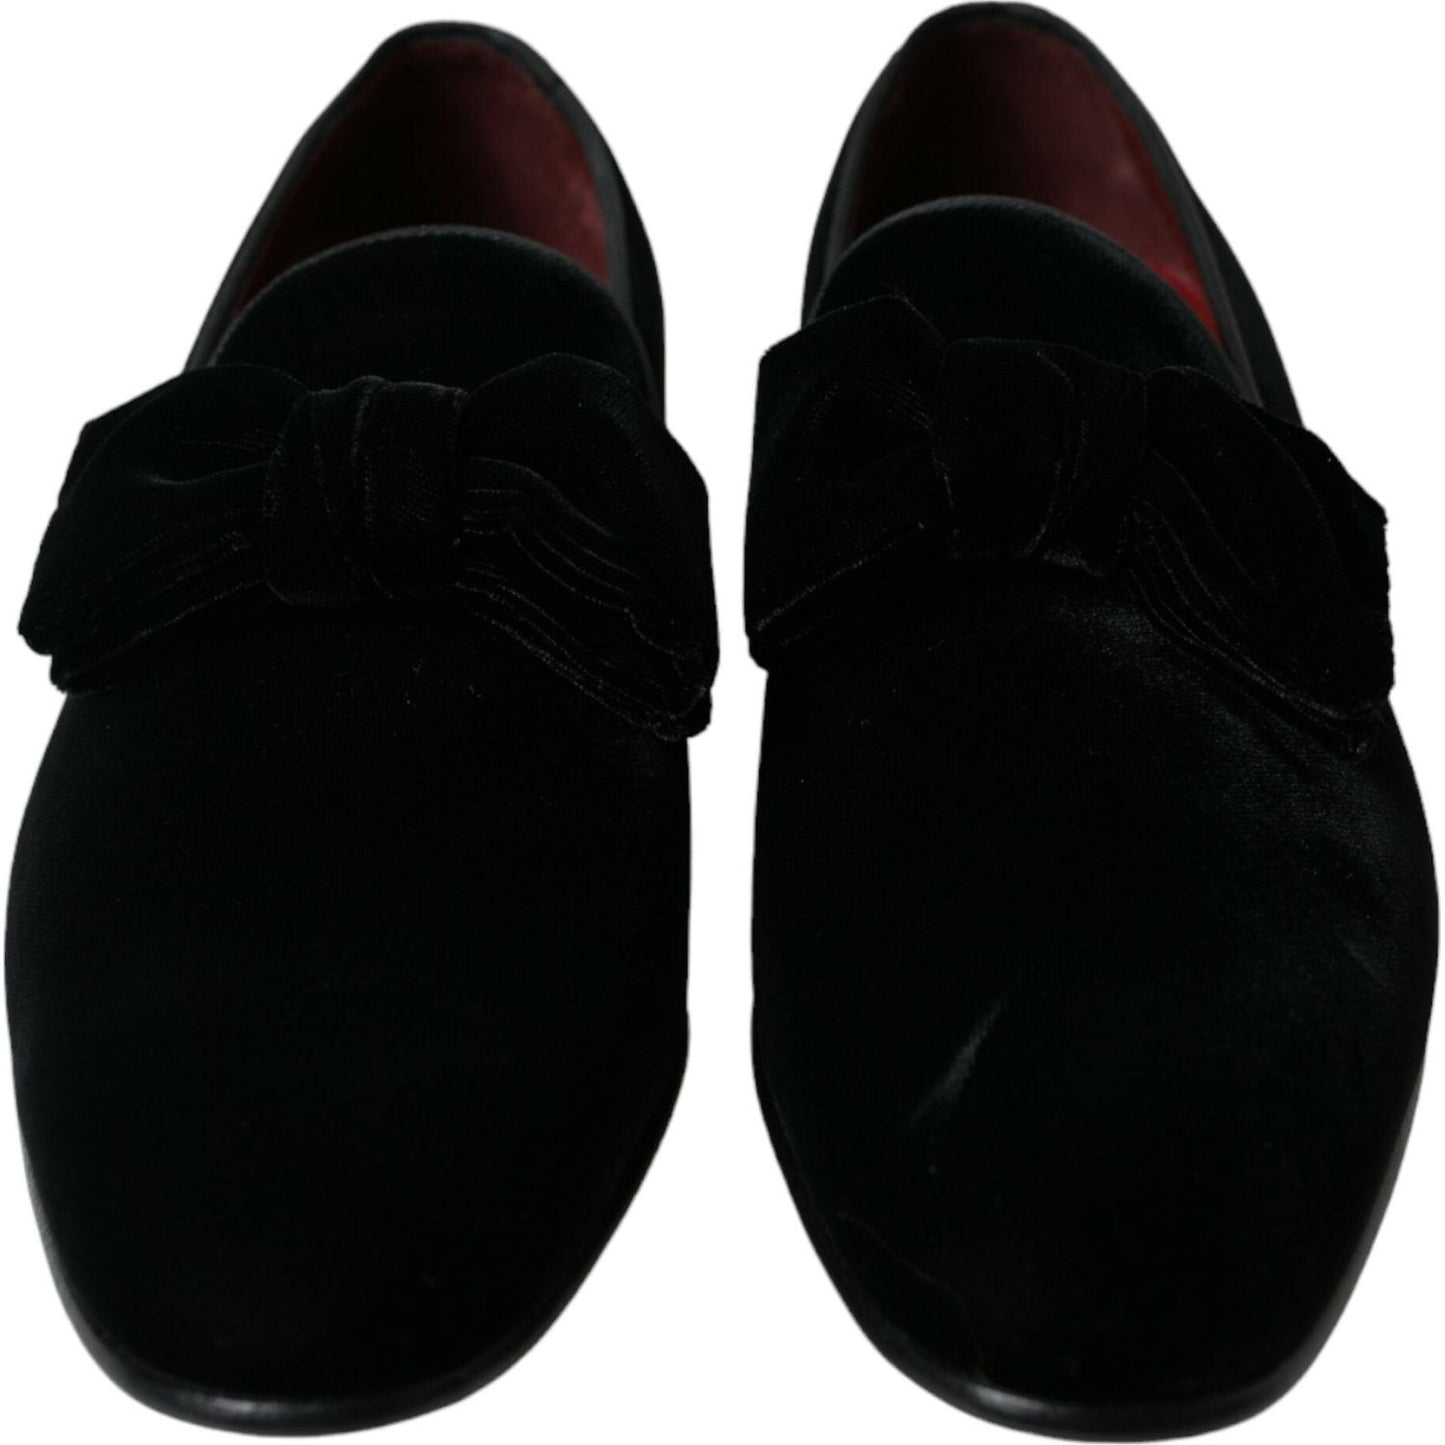 Dolce & Gabbana Elegant Black Velvet Loafers - Men's Luxury Footwear black-velvet-loafers-formal-dress-shoes-2